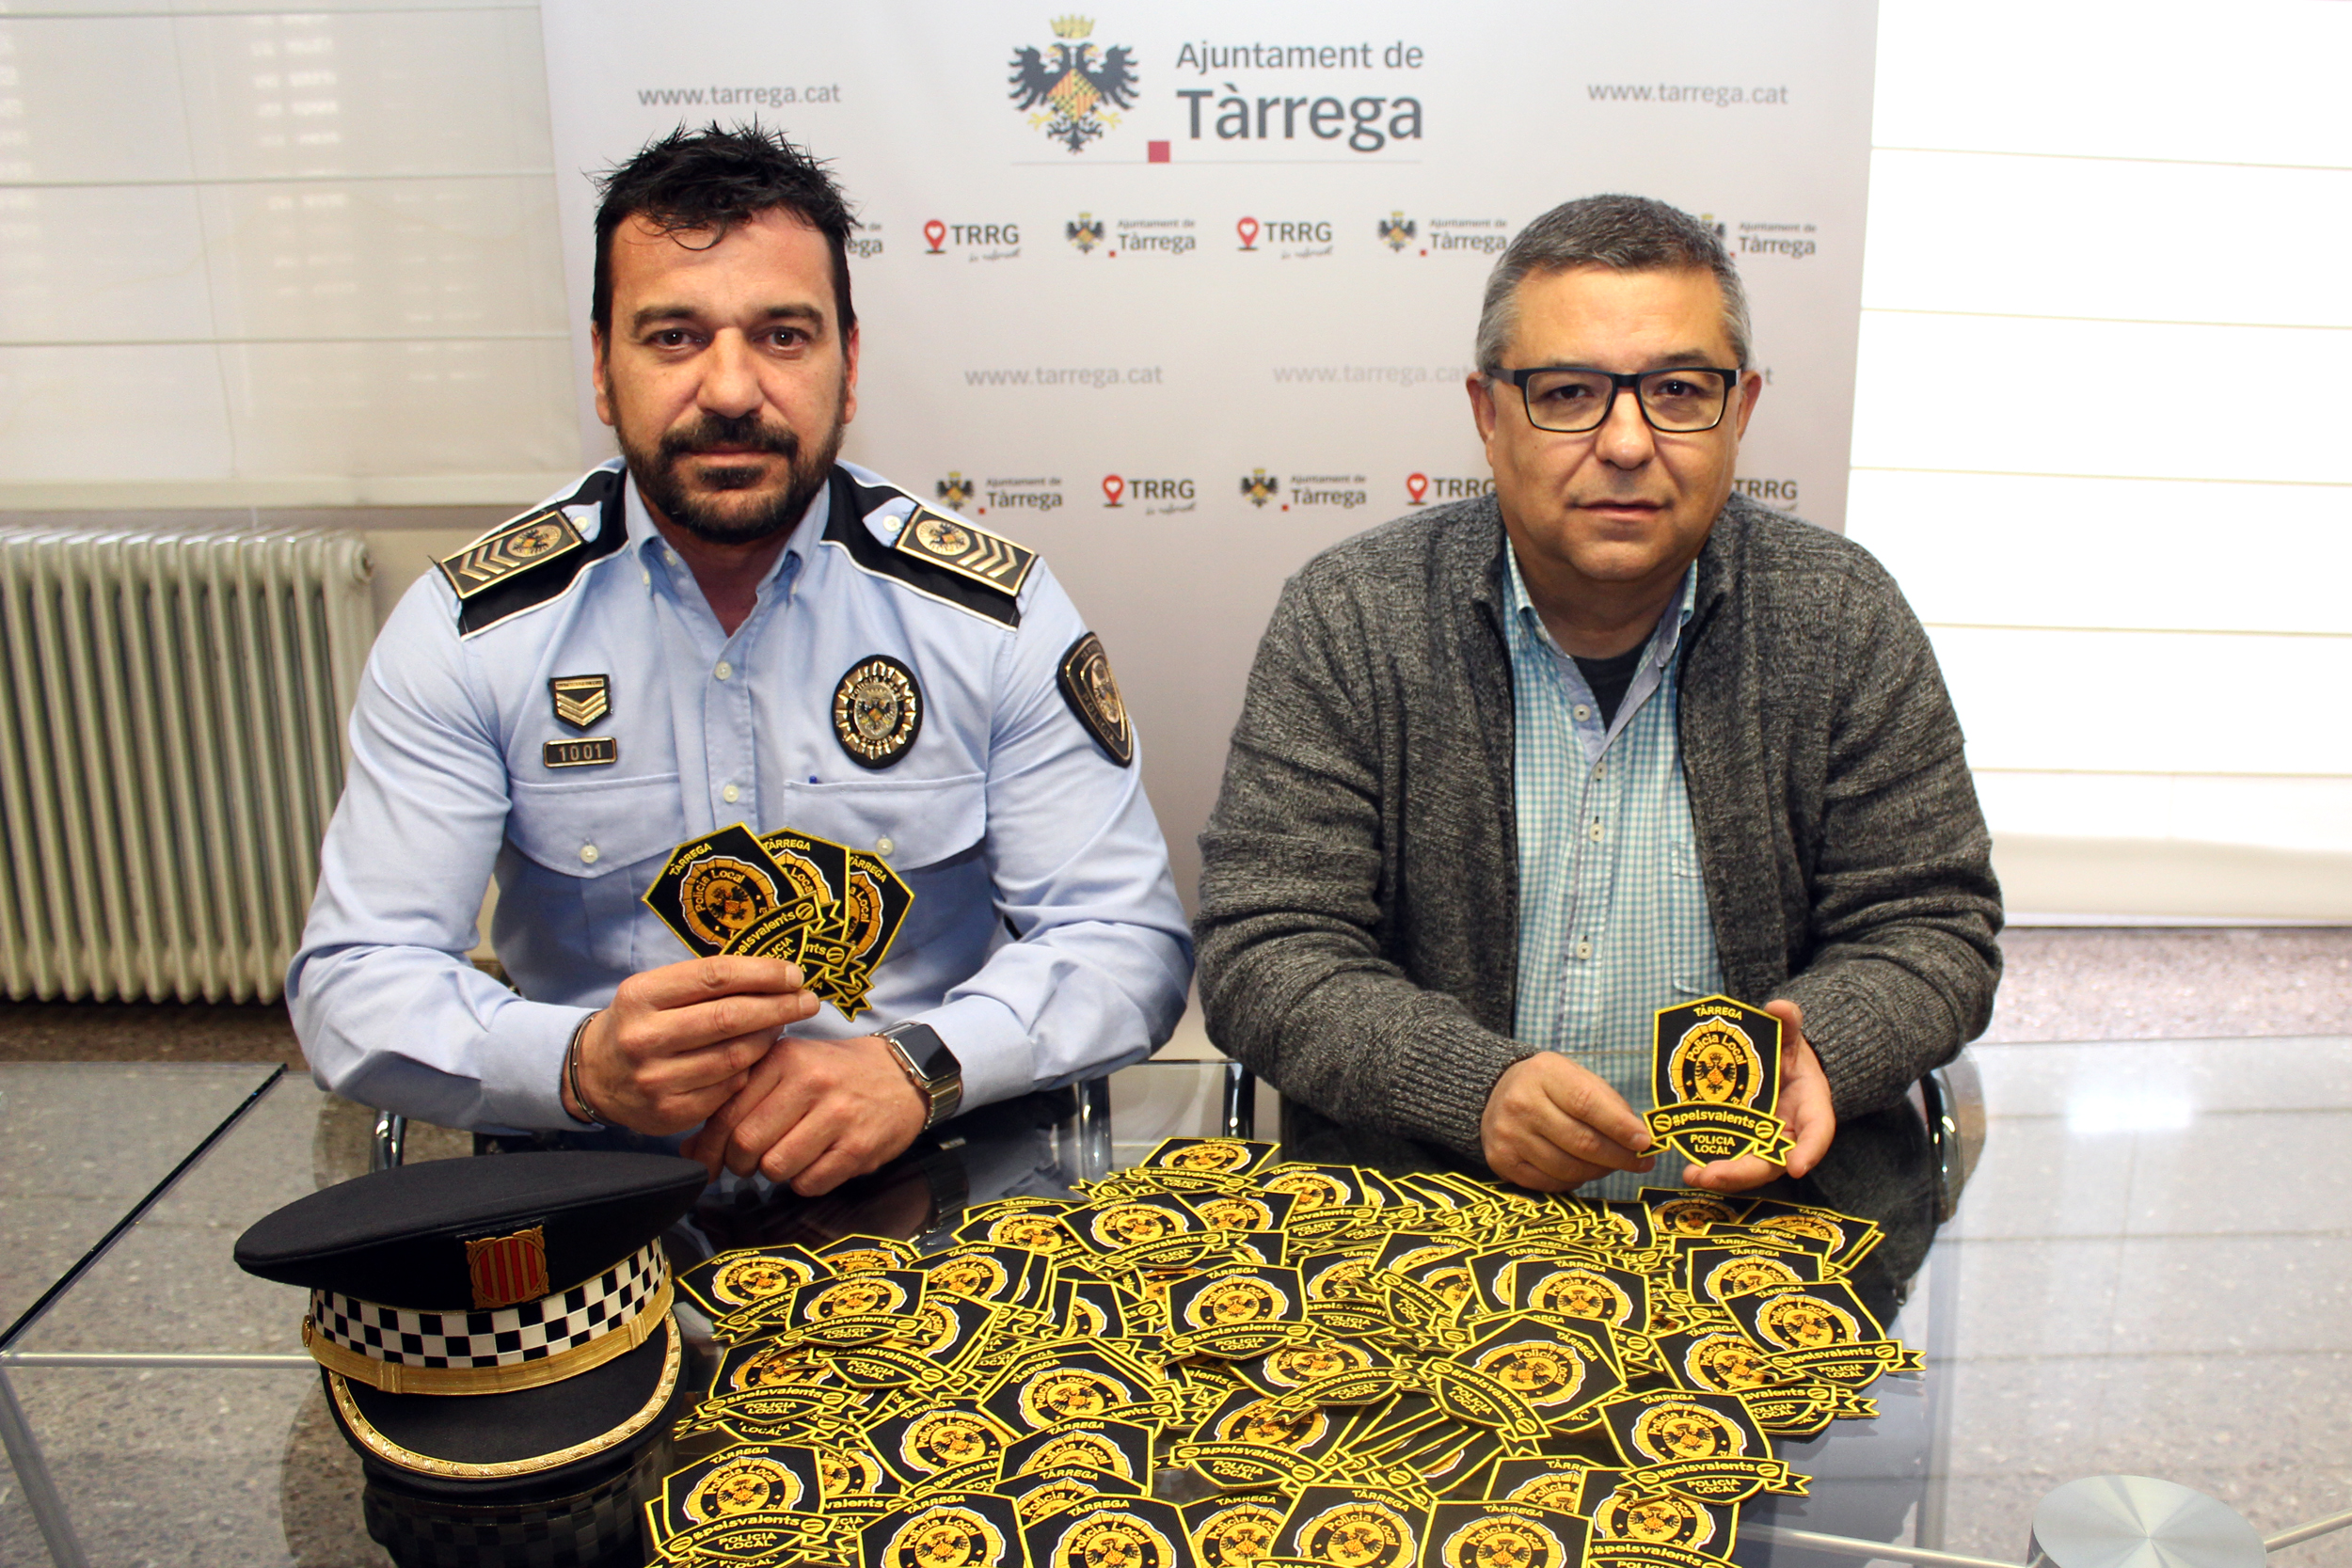 La Policia Local de Tàrrega se suma a la lluita contra el càncer infantil amb la venda d’escuts solidaris   